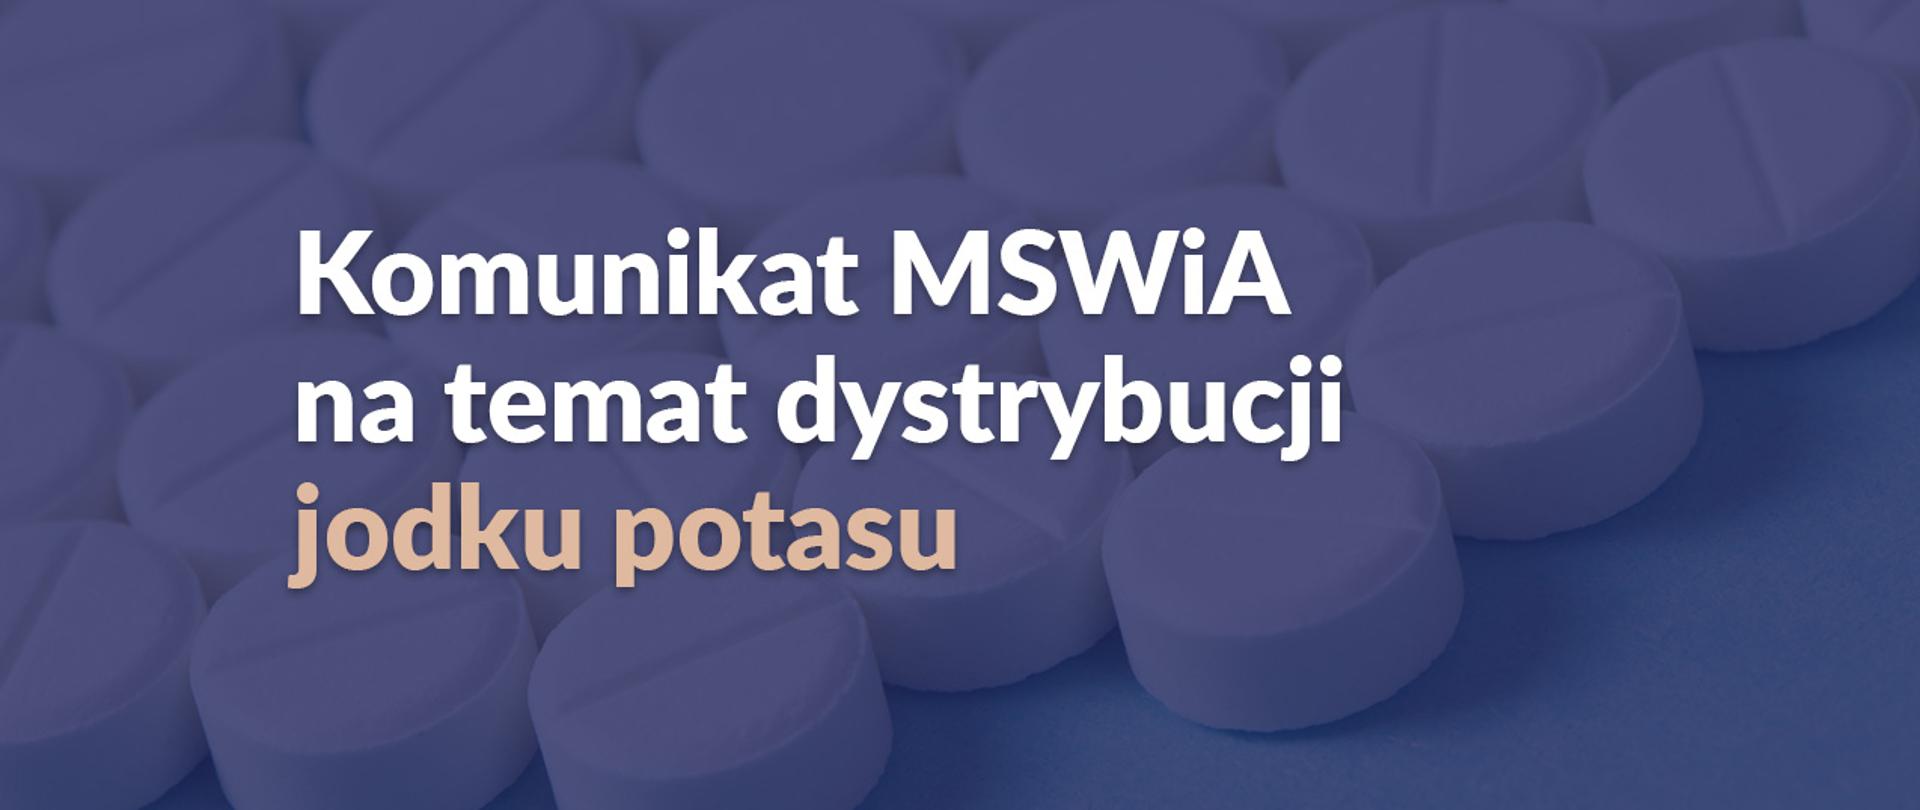 Tło stanowią ułożone białe tabletki. Na tle napis: Komunikat MSWiA na temat dystrybucji jodku potasu.